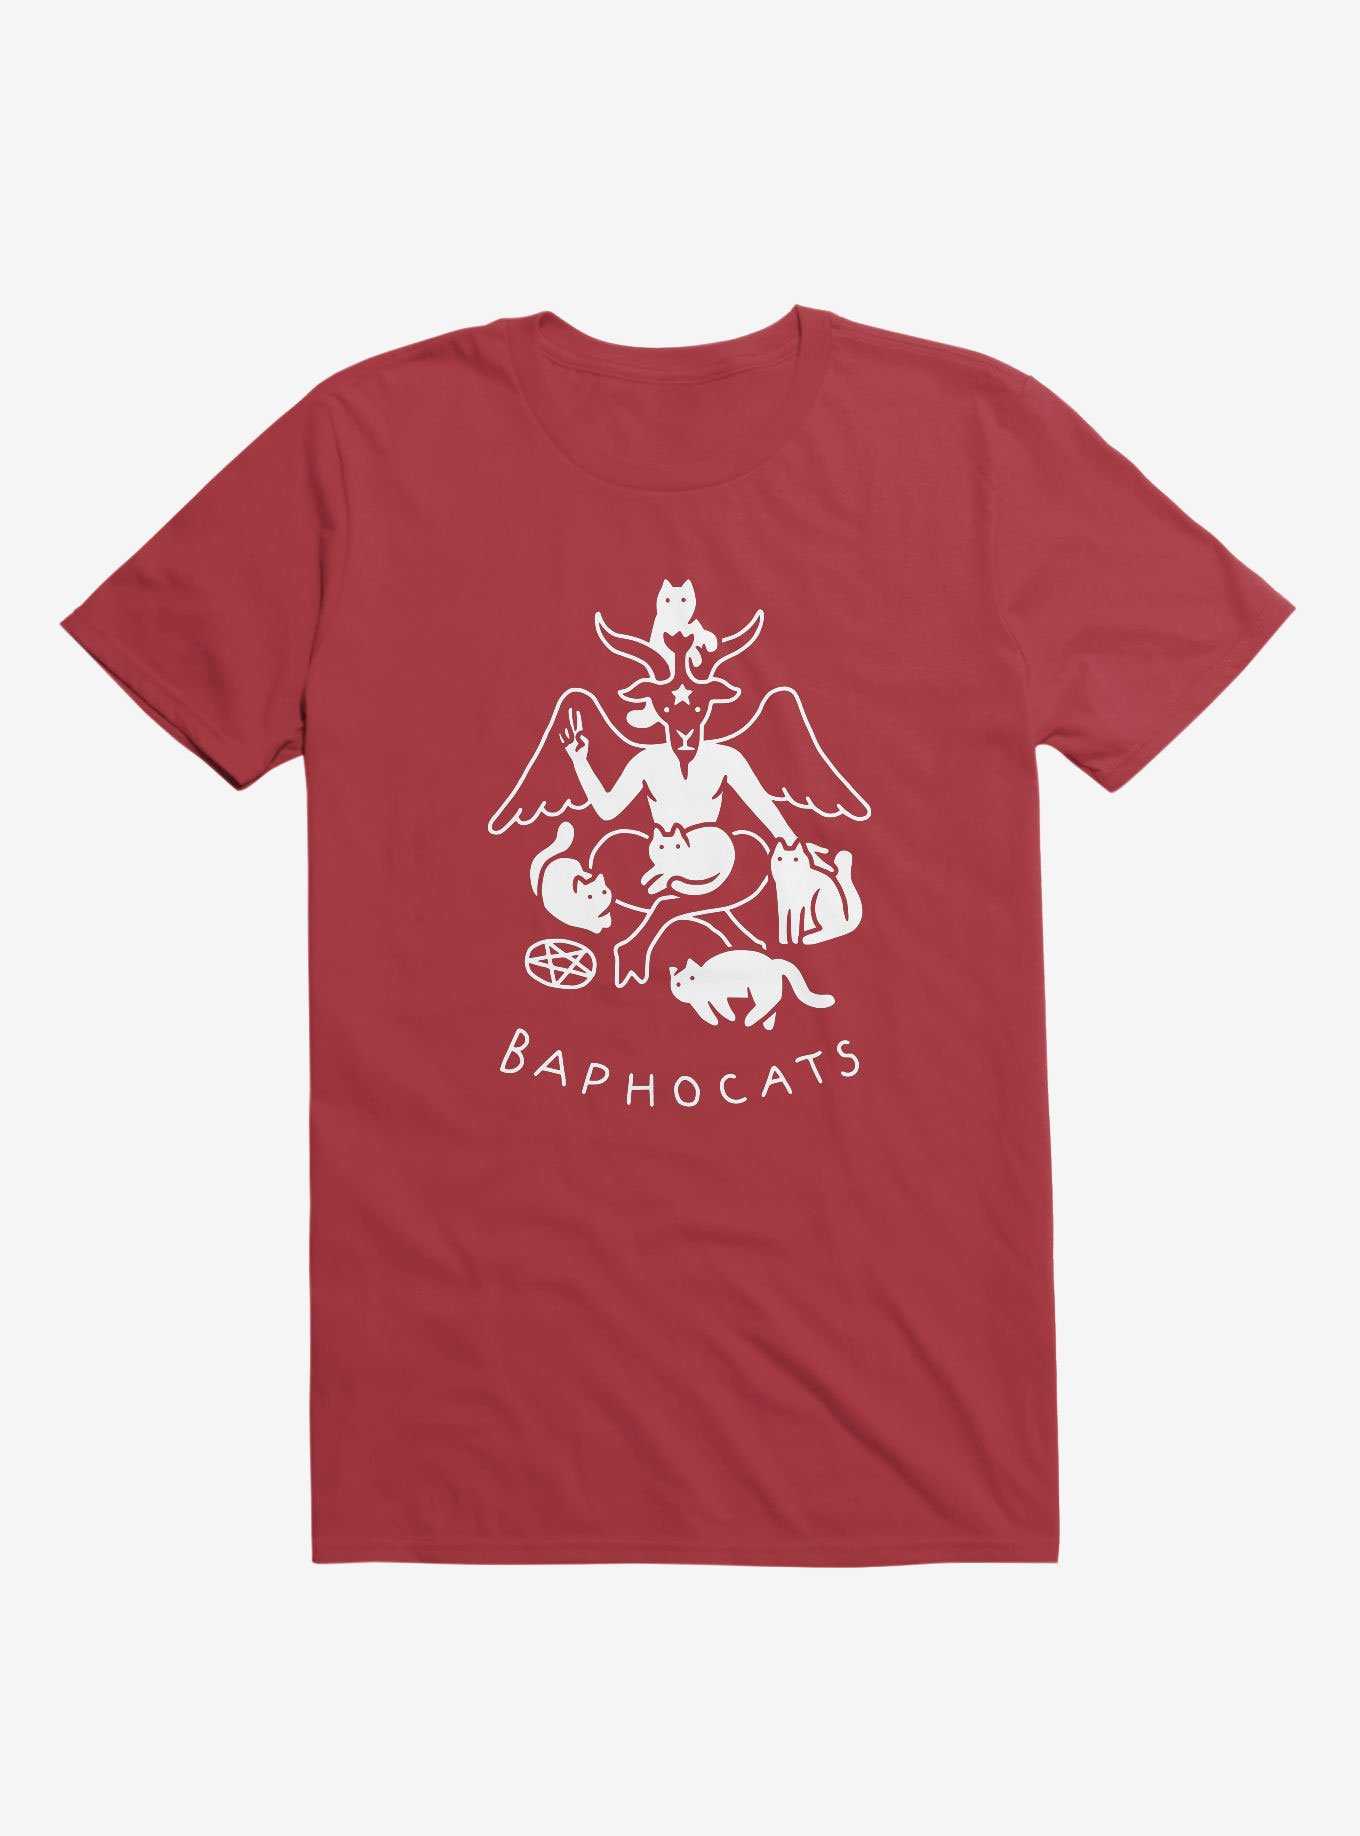 Baphocats Baphomet Cats Red T-Shirt, , hi-res